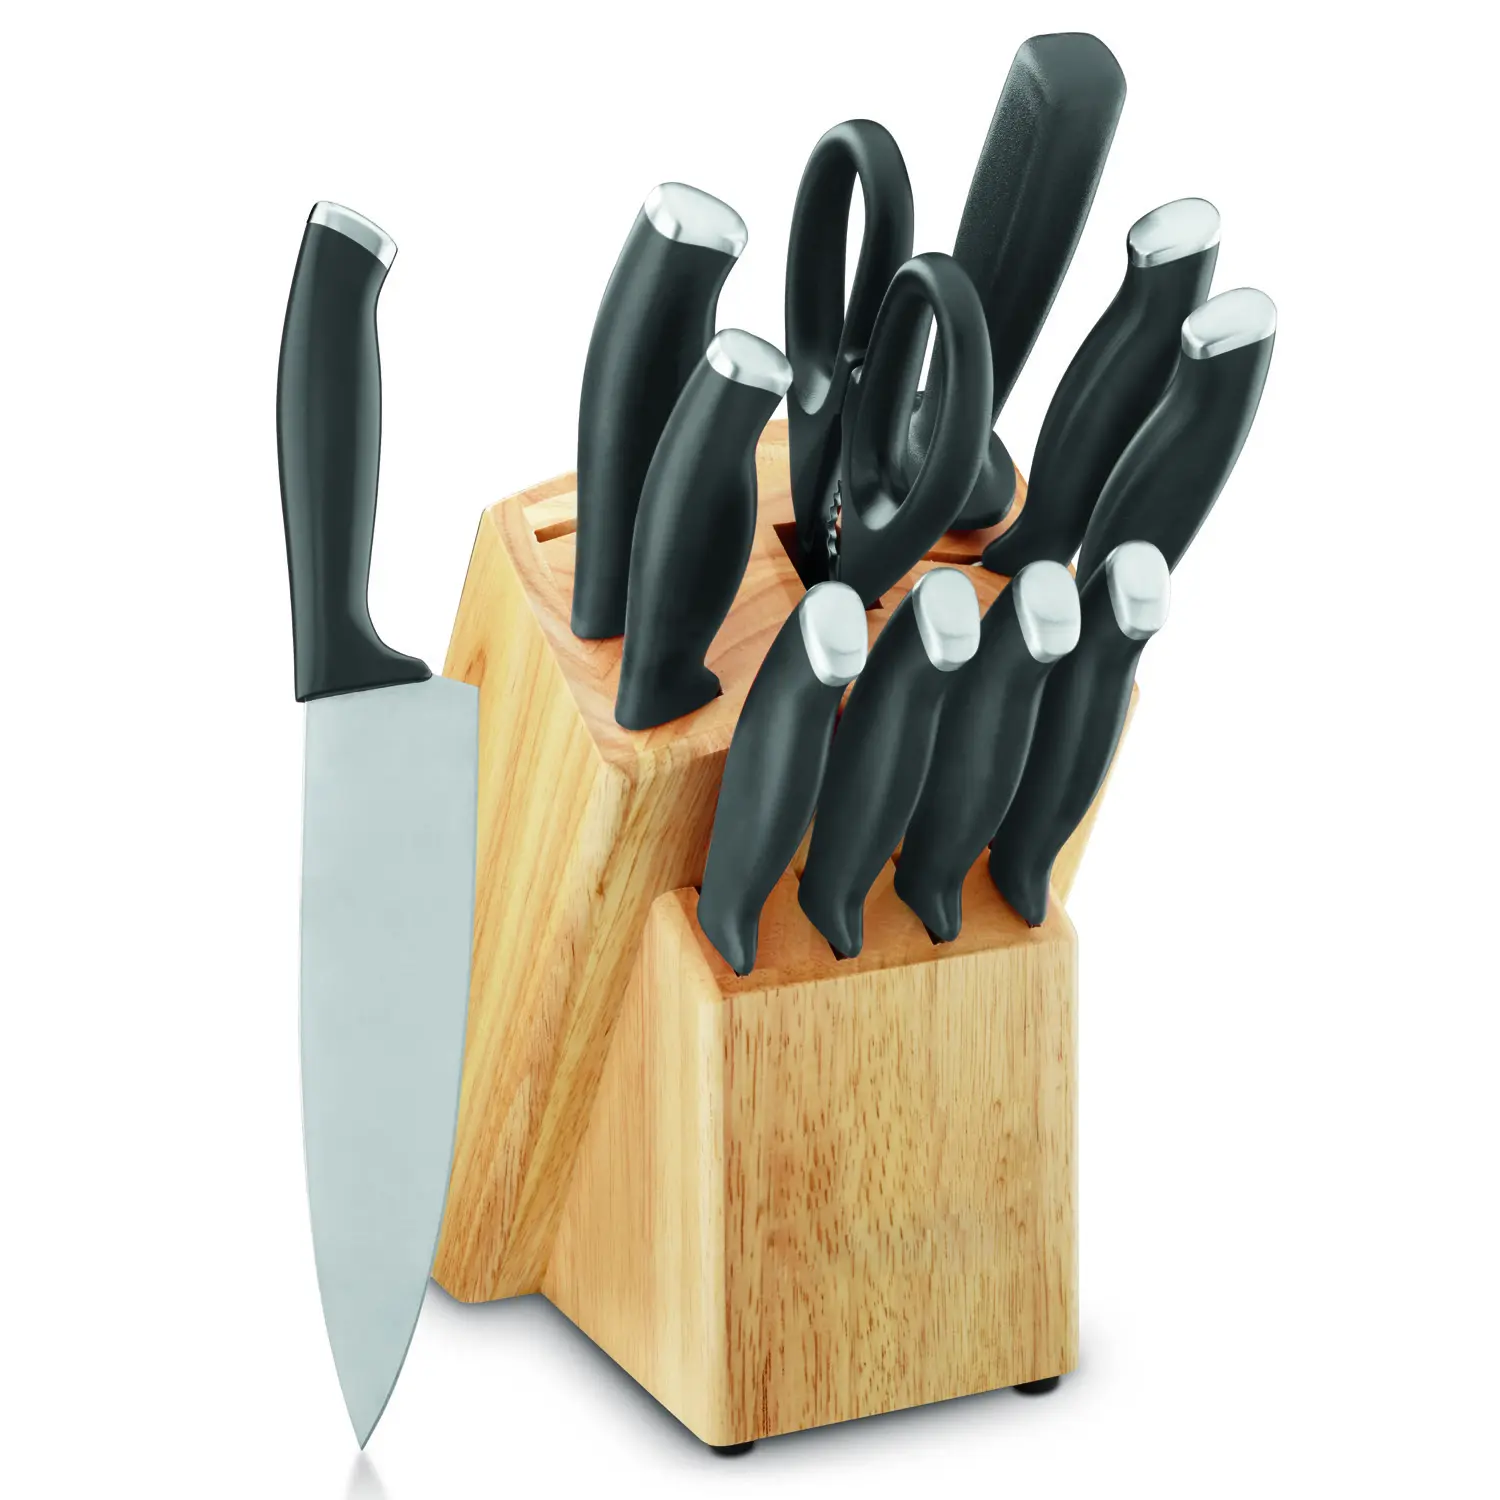 JINYU 12PC in acciaio inox colore coltello Set coltello da cucina posate Set con forbici da cucina temperino e blocco di legno